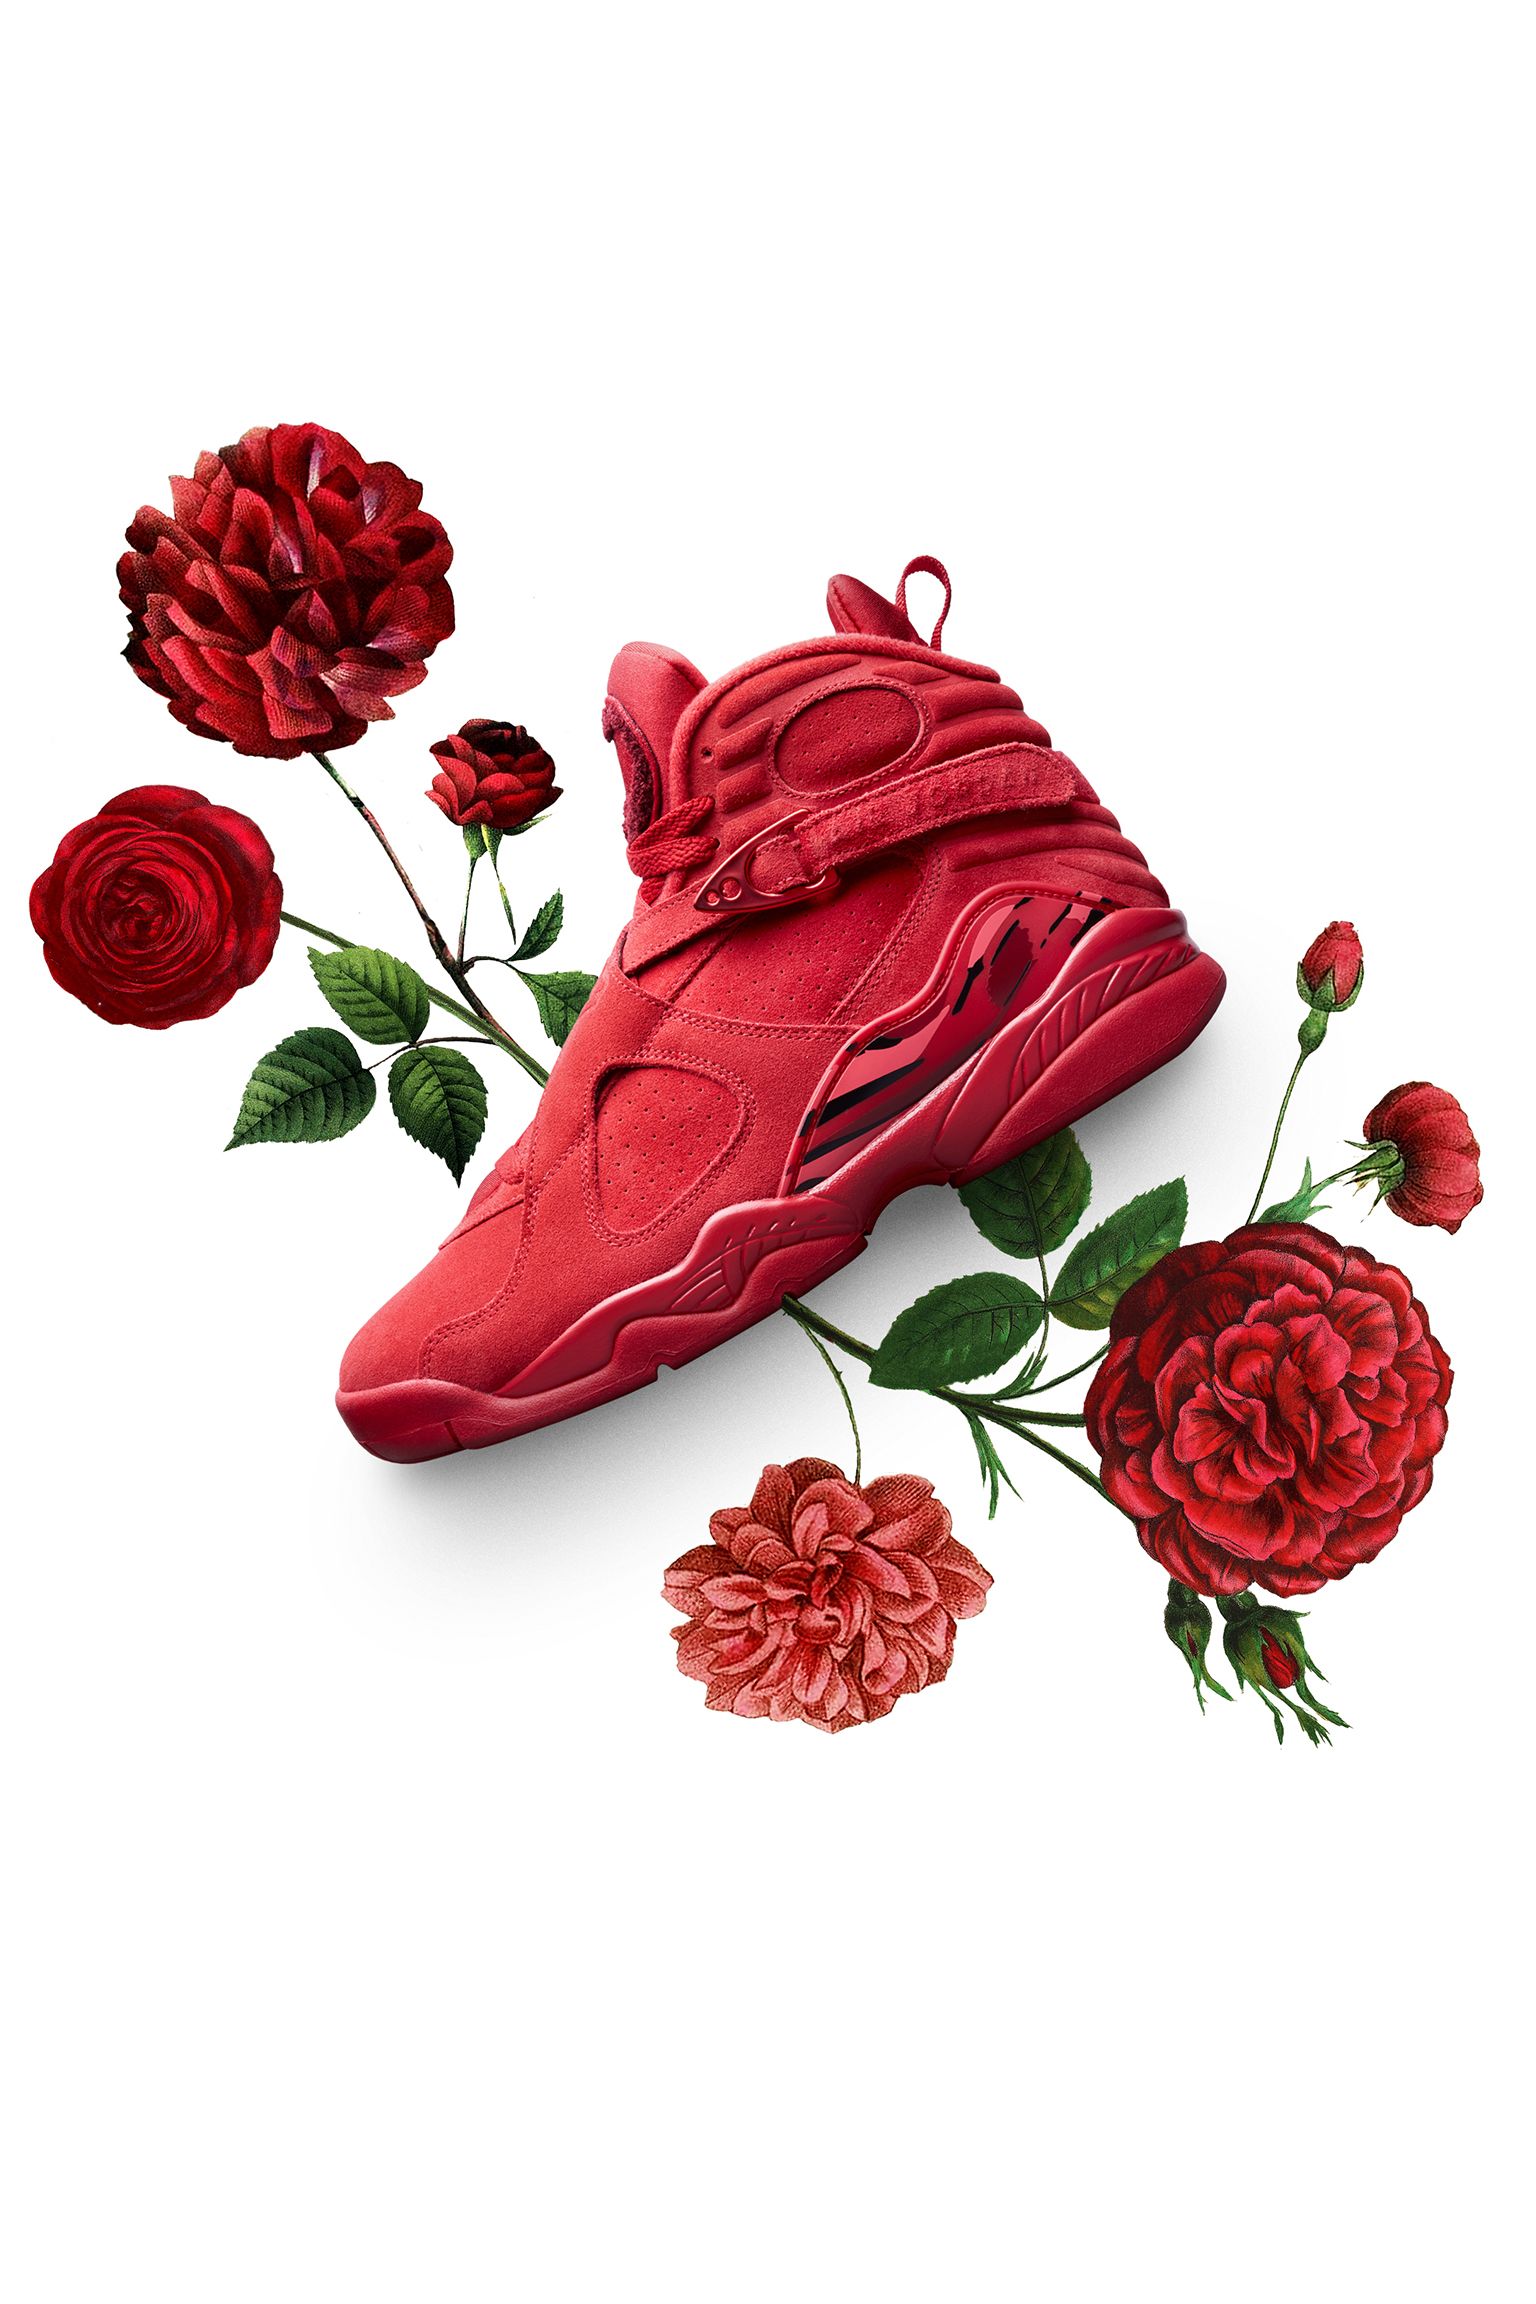 red rose jordans